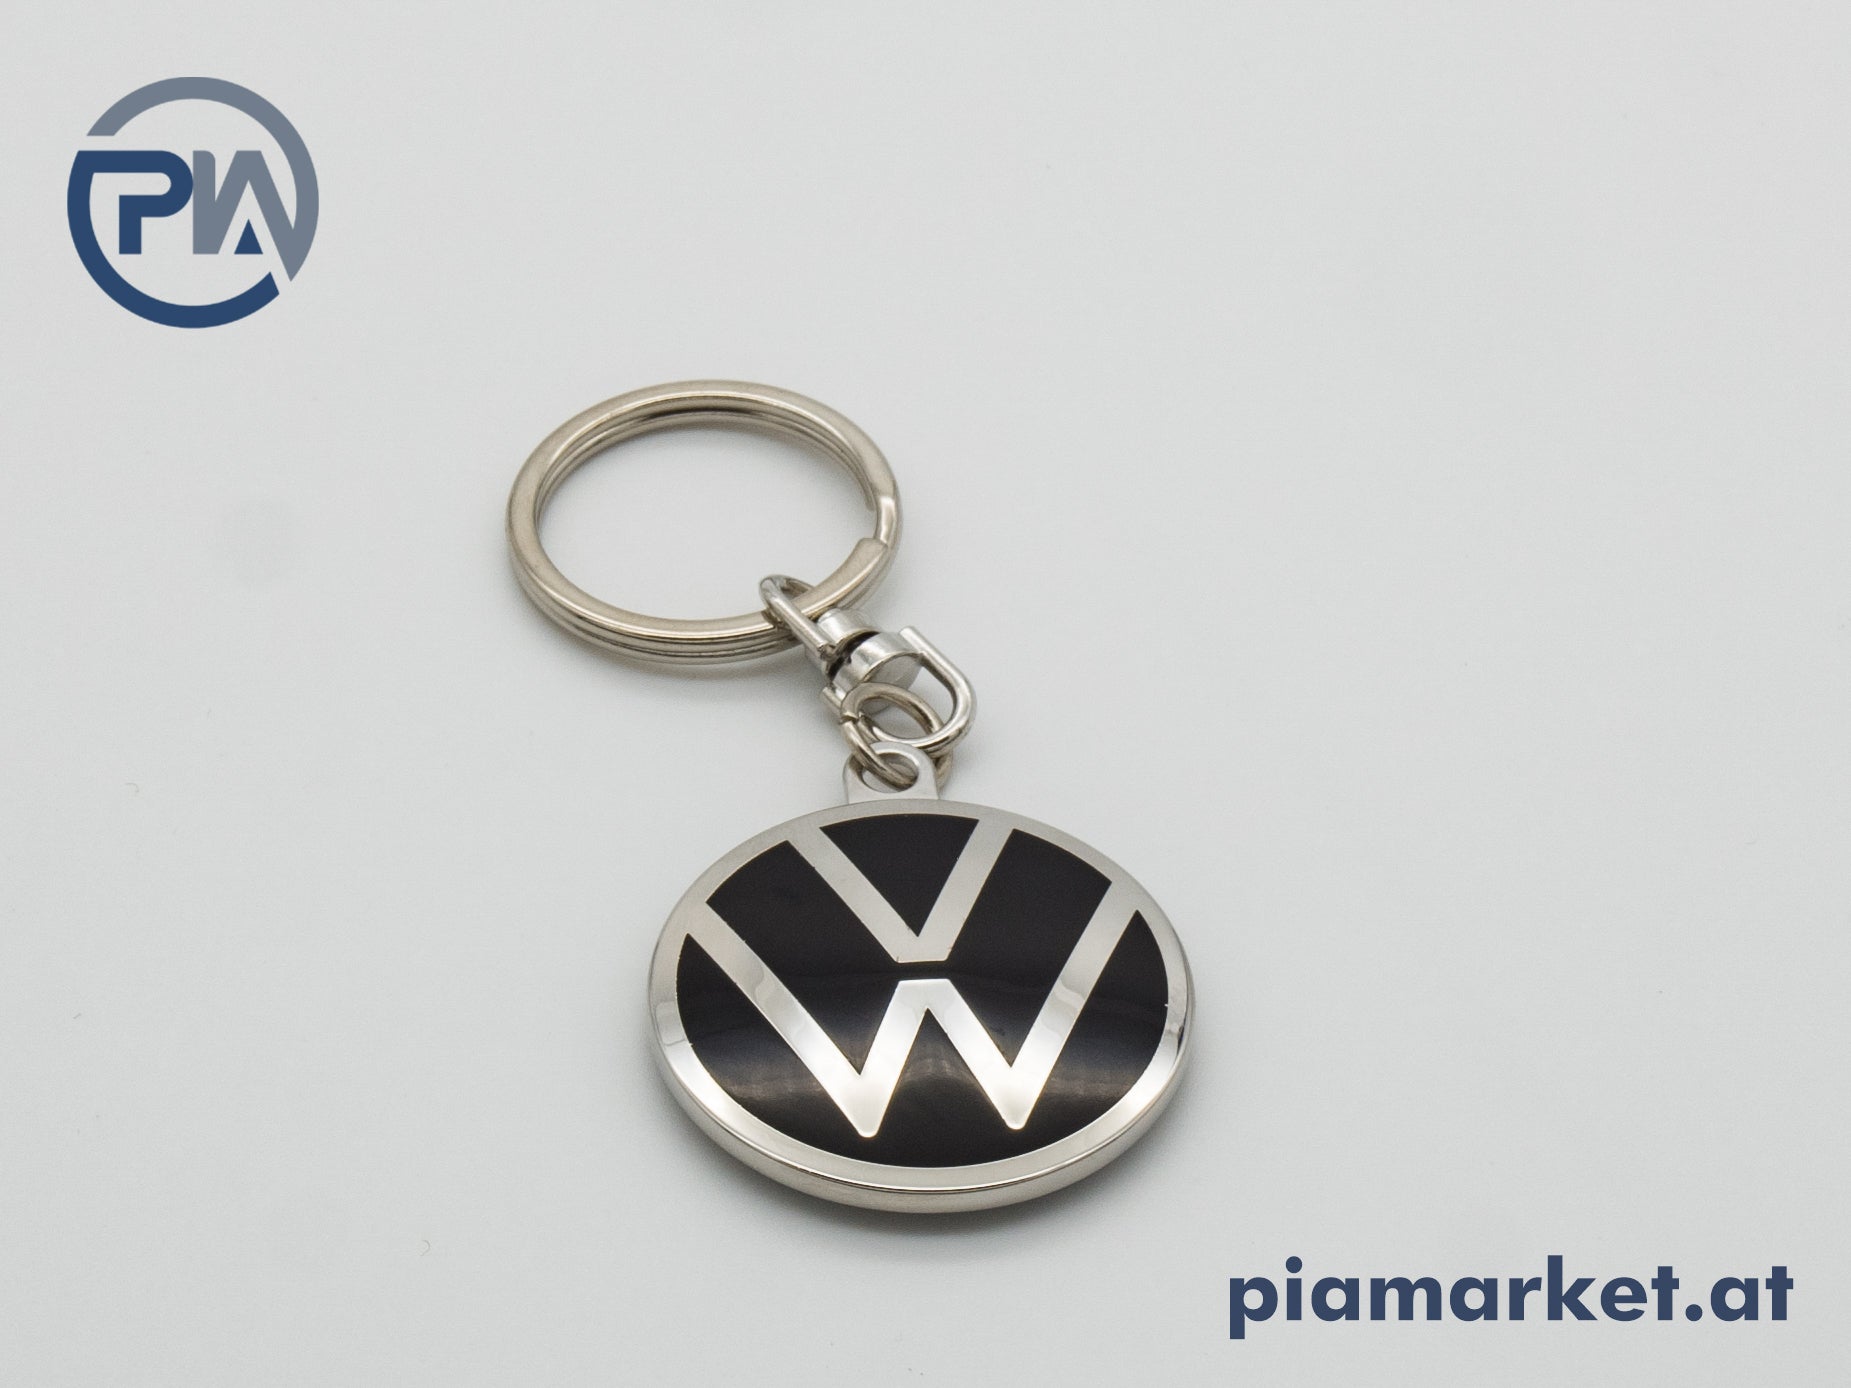 VW Schlüsselanhänger – piamarket